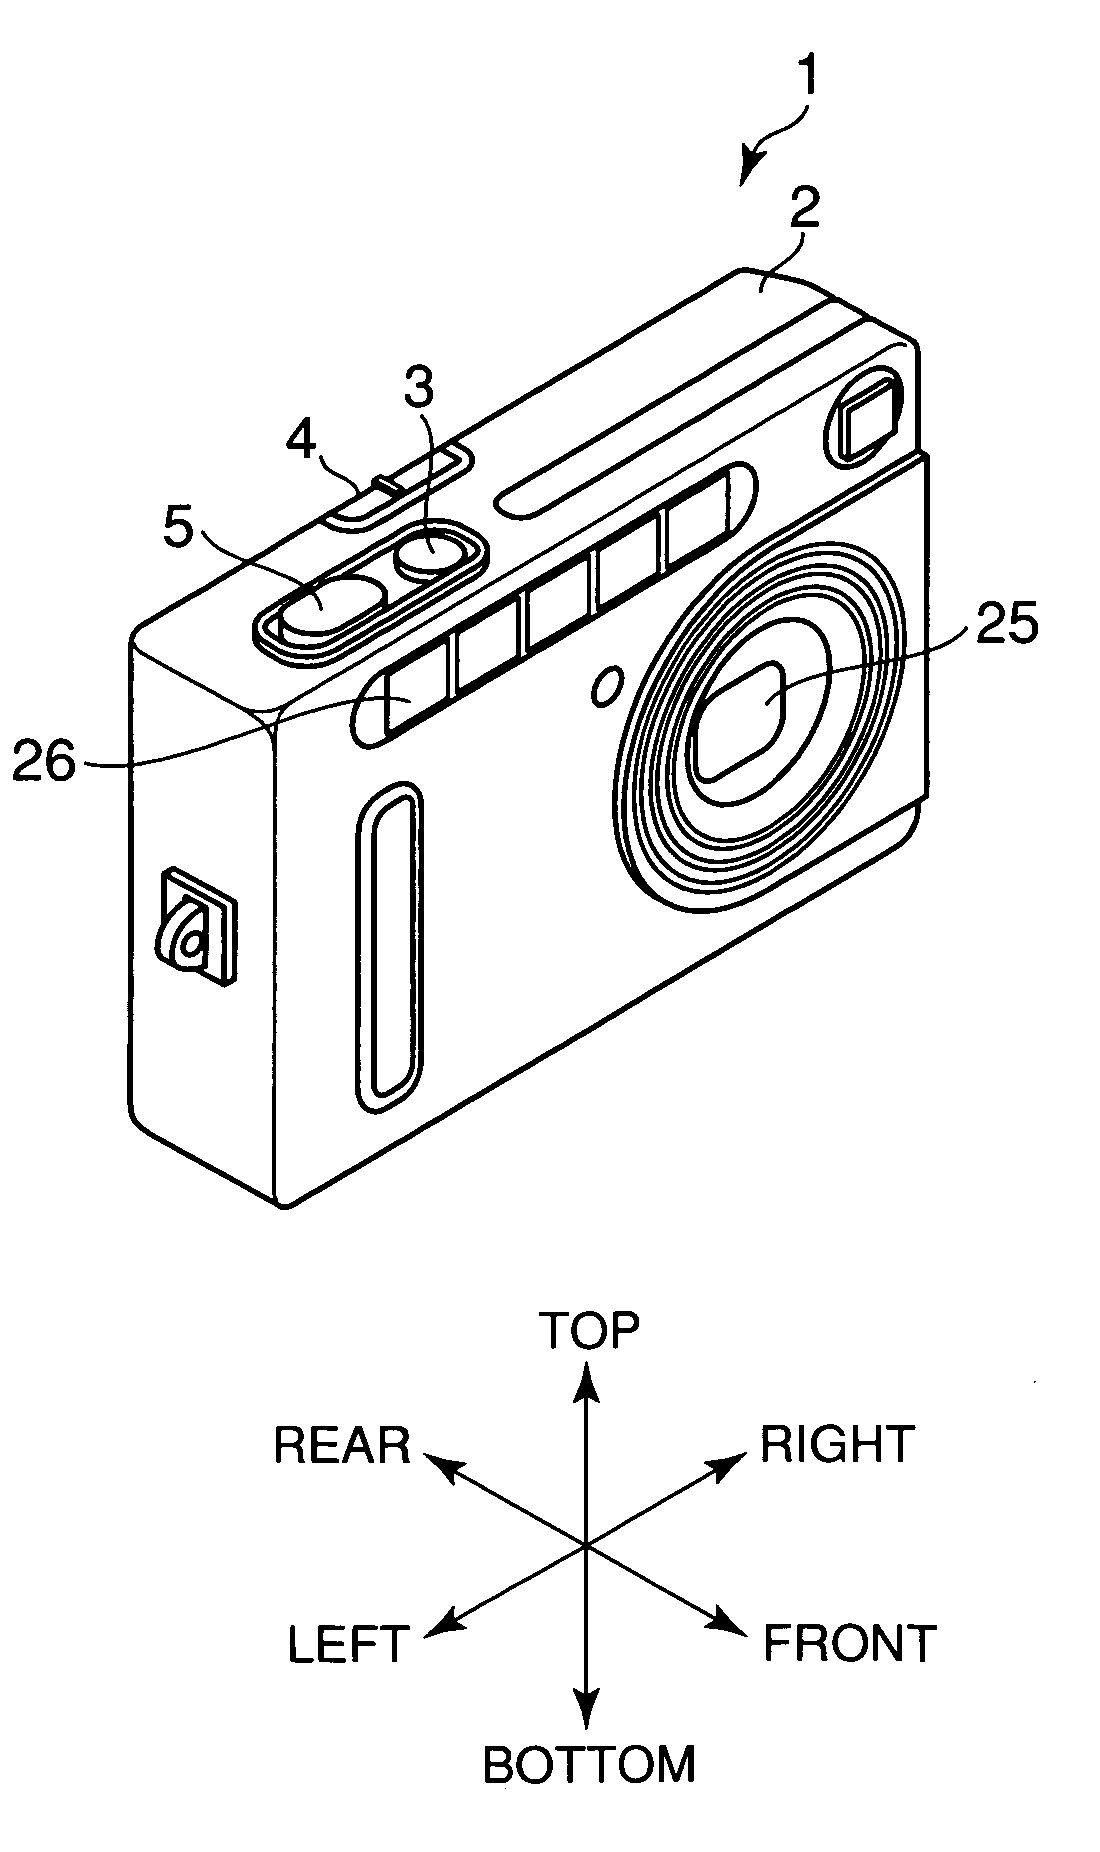 Electronic camera having light-emitting unit